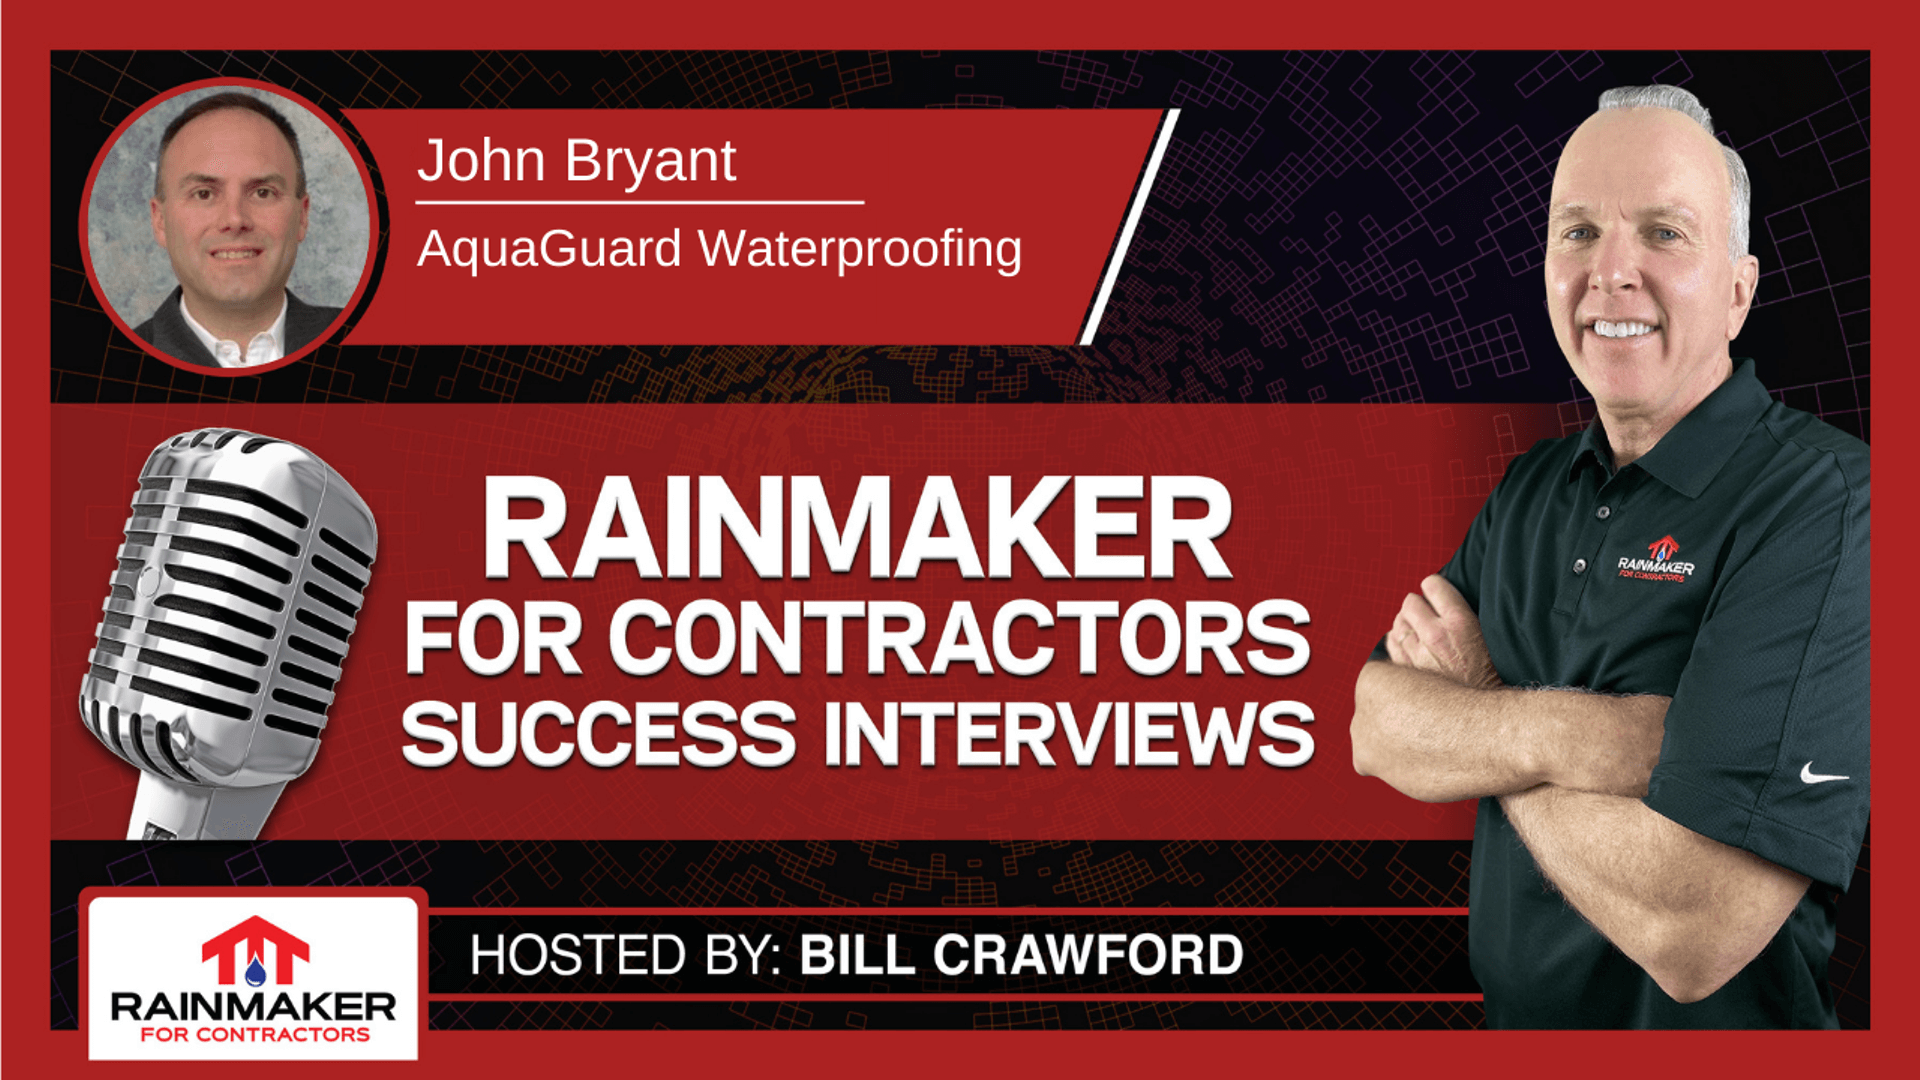 John Bryant - AquaGuard Waterproofing